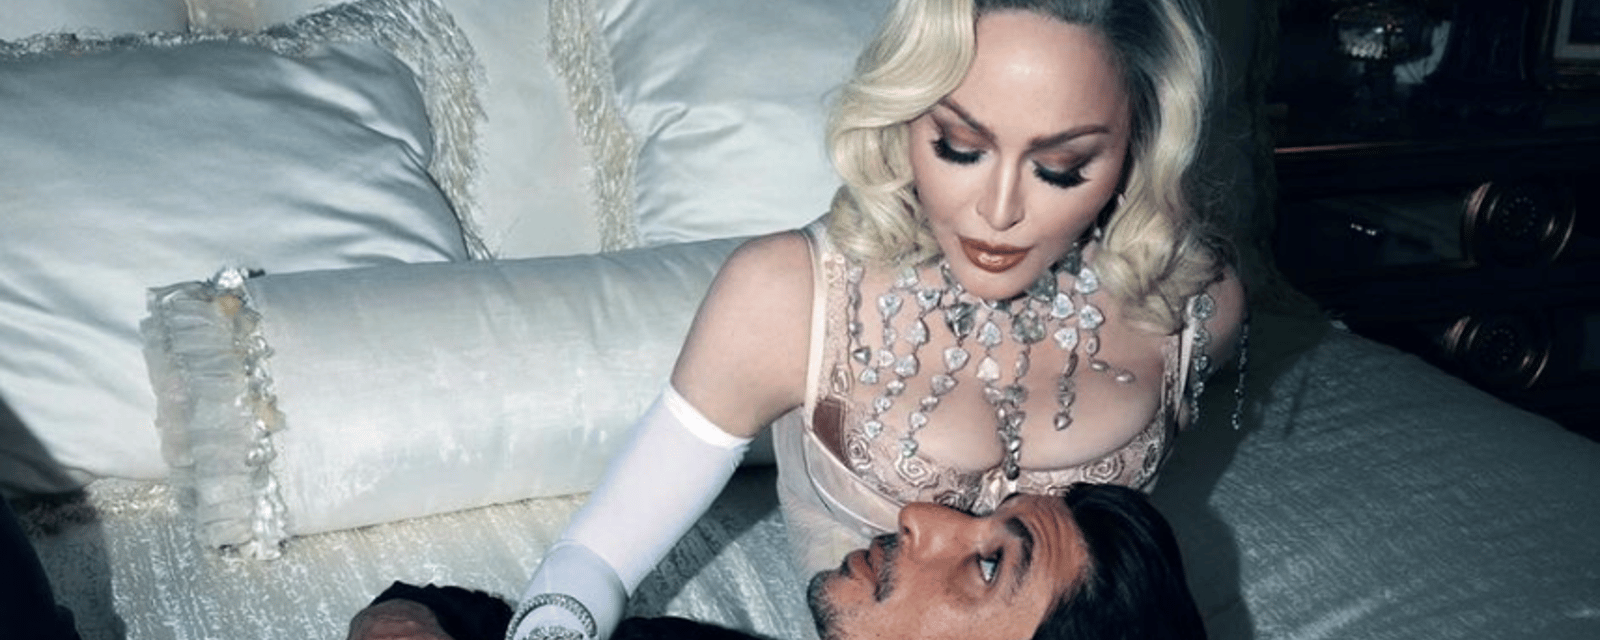 Madonna est poursuivie pour son spectacle trop explicite